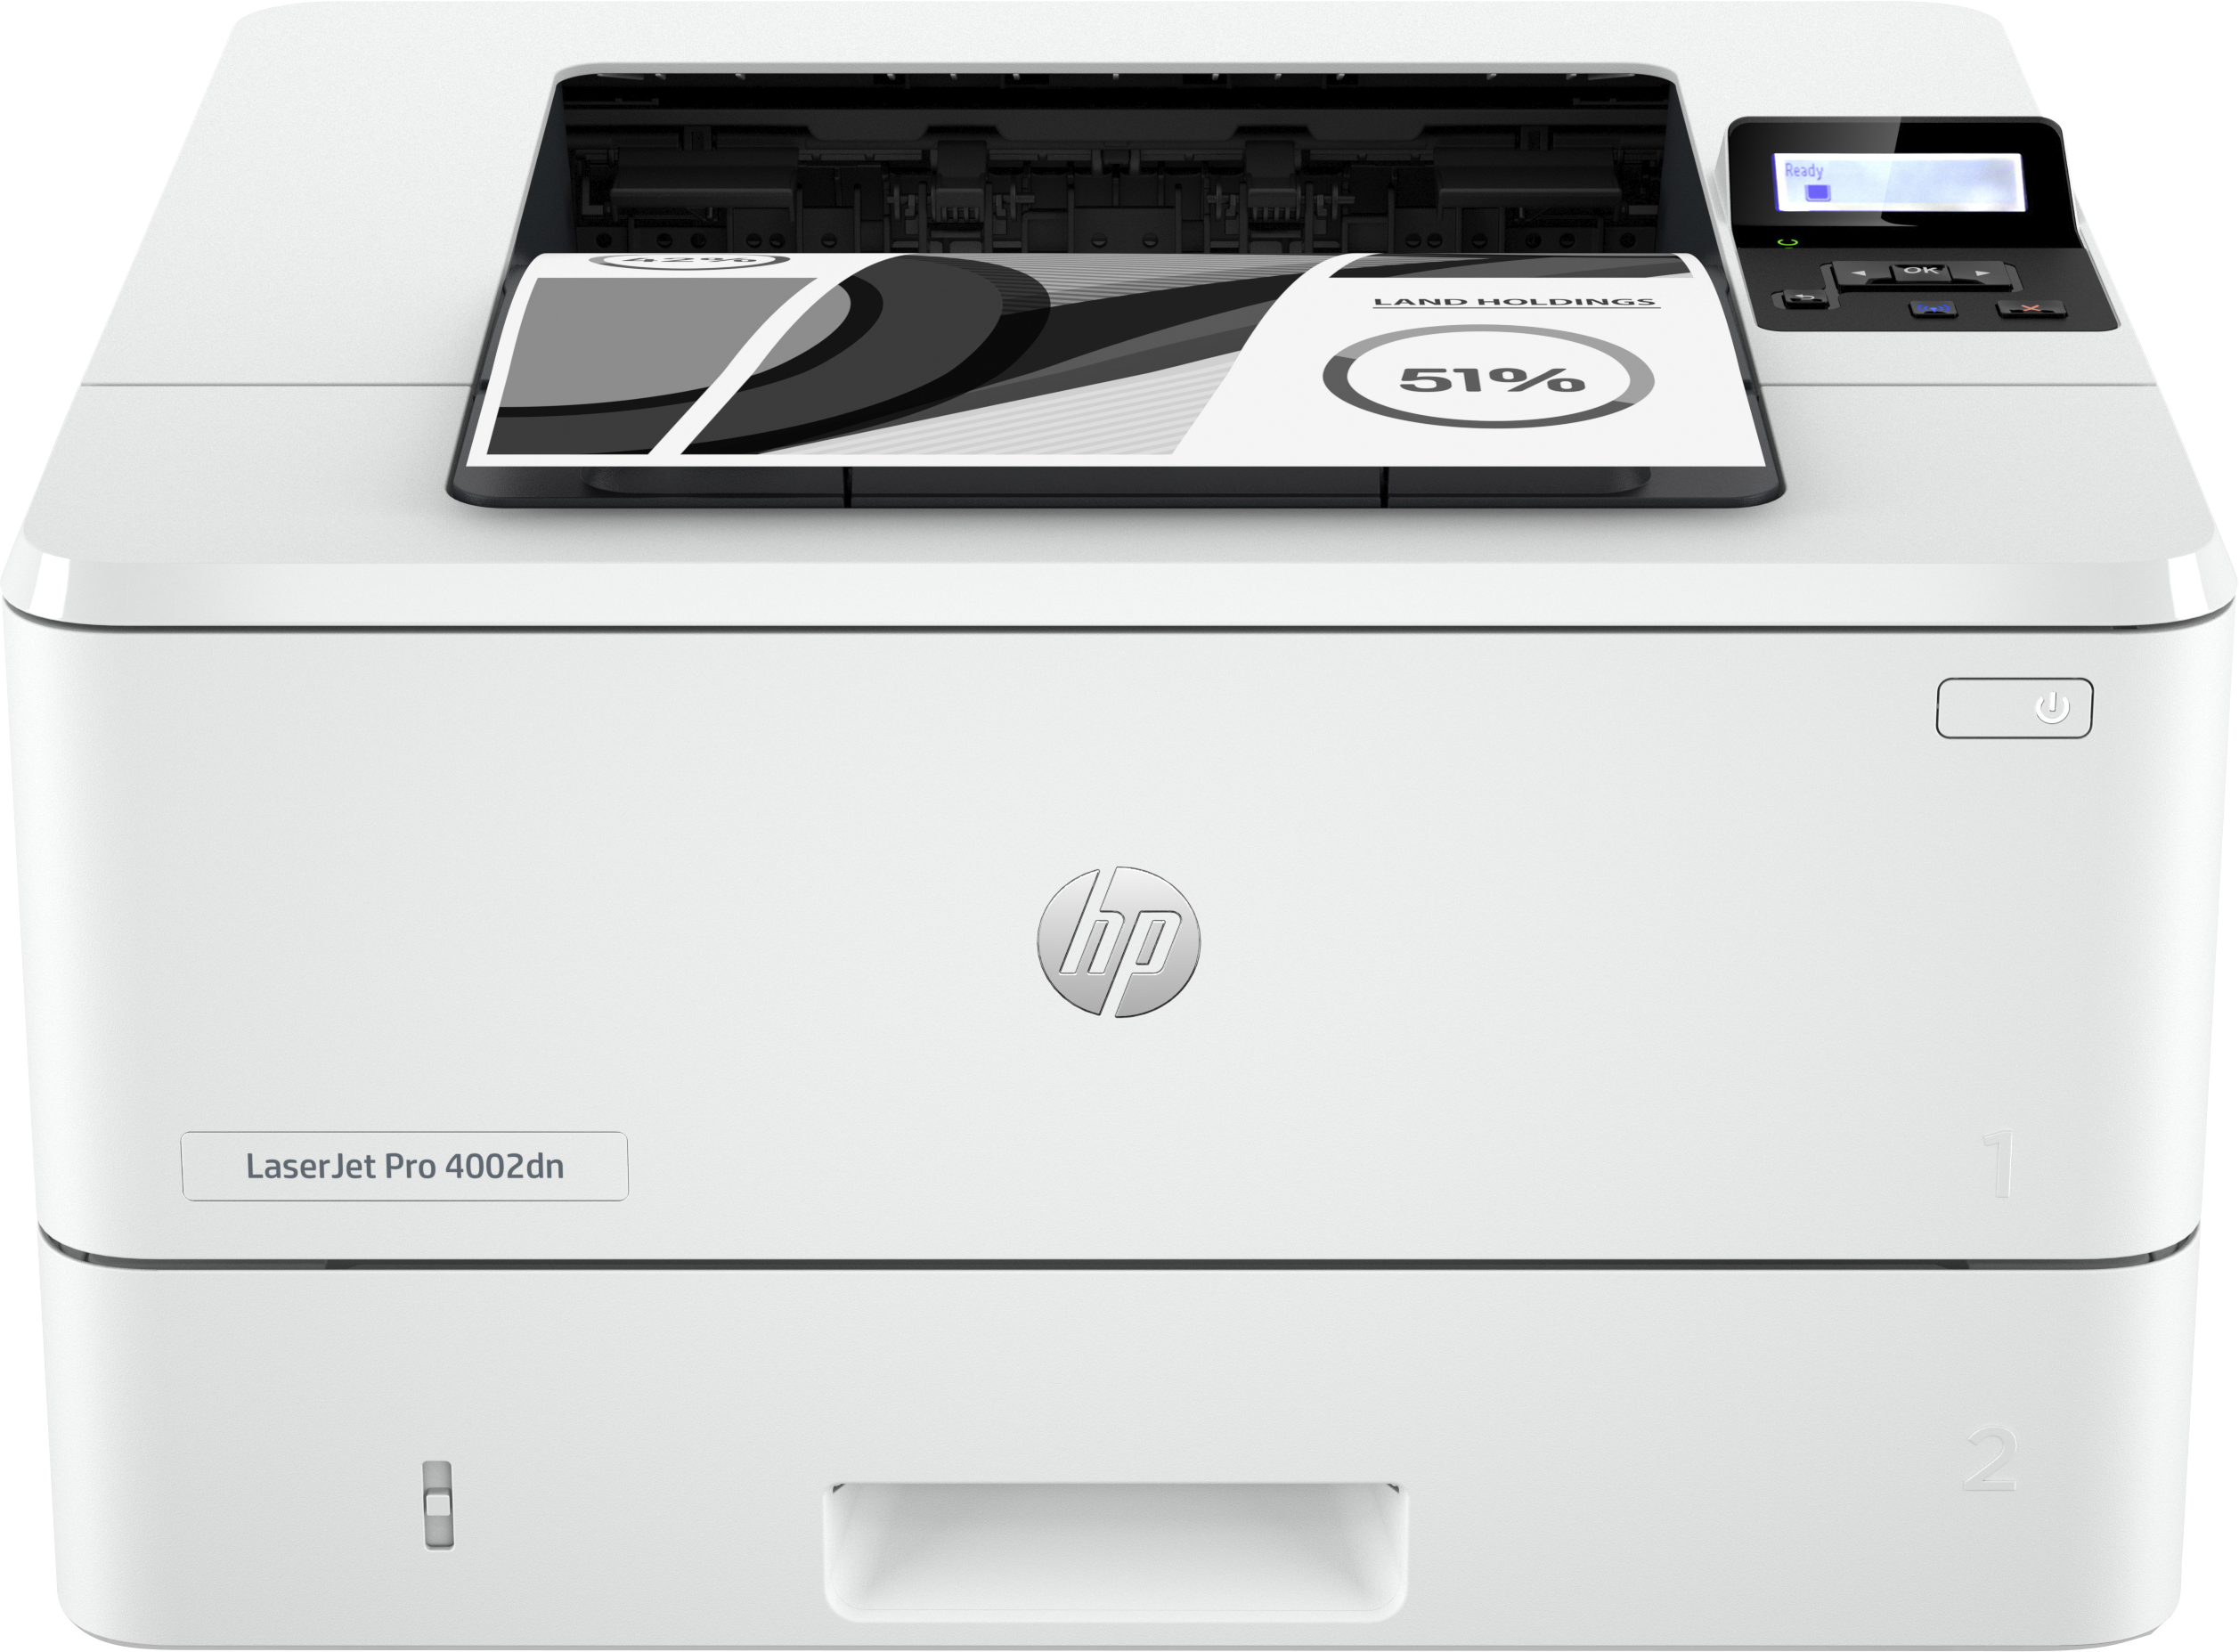 HP LaserJet Pro HP LaserJet Pro 4002dn printer, Print, Dubbelzijdig printen; Eerste pagina snel gereed; Energiezuinig; Compact formaat; Optimale beveiliging